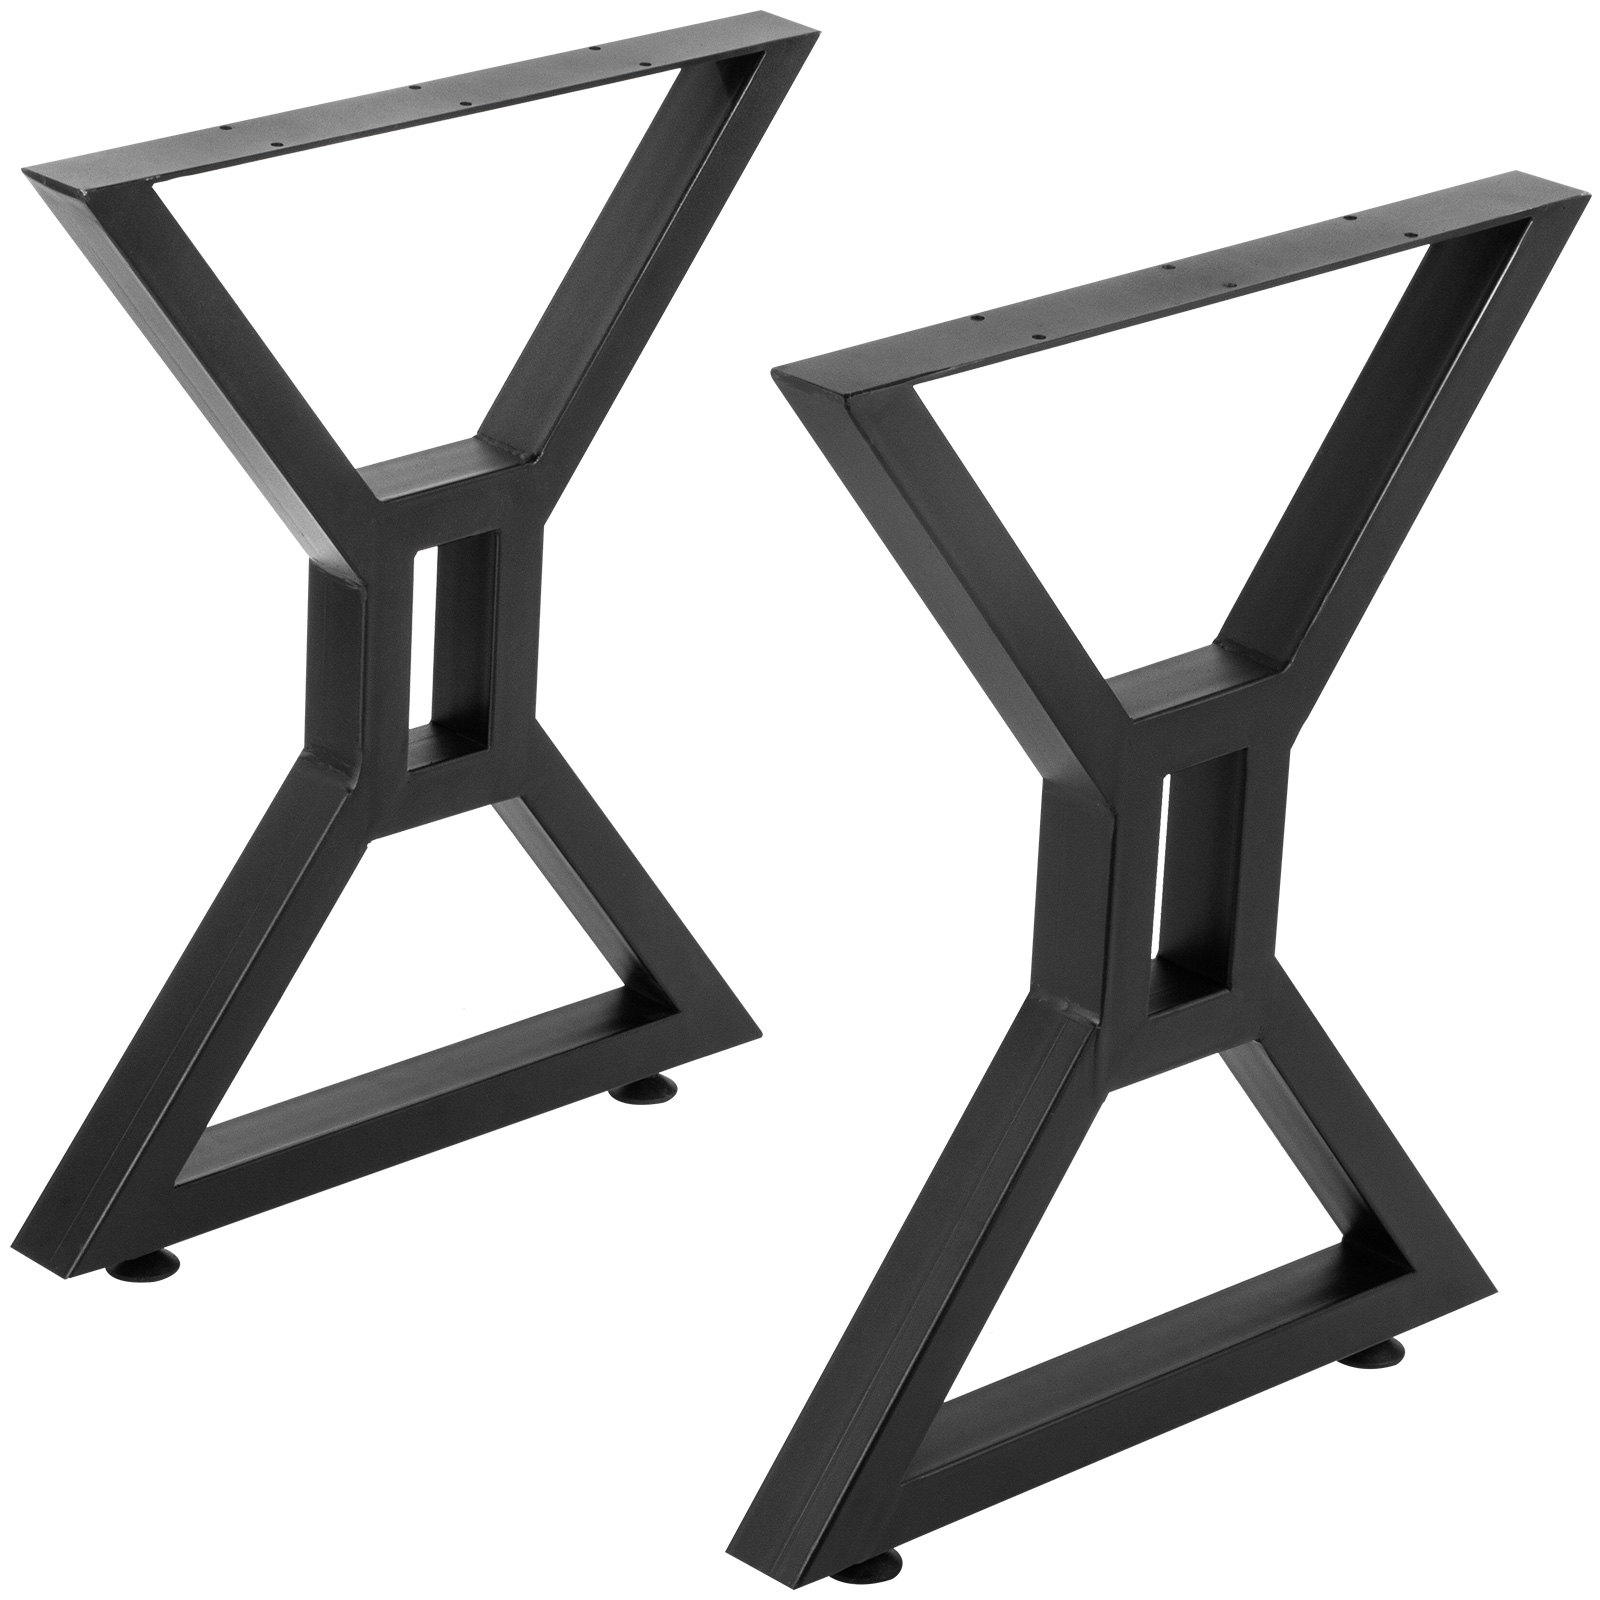 2PC Steel Metal Table Legs U-Shape/ X-Shape for Dining Table Desk Heavy Duty Leg 